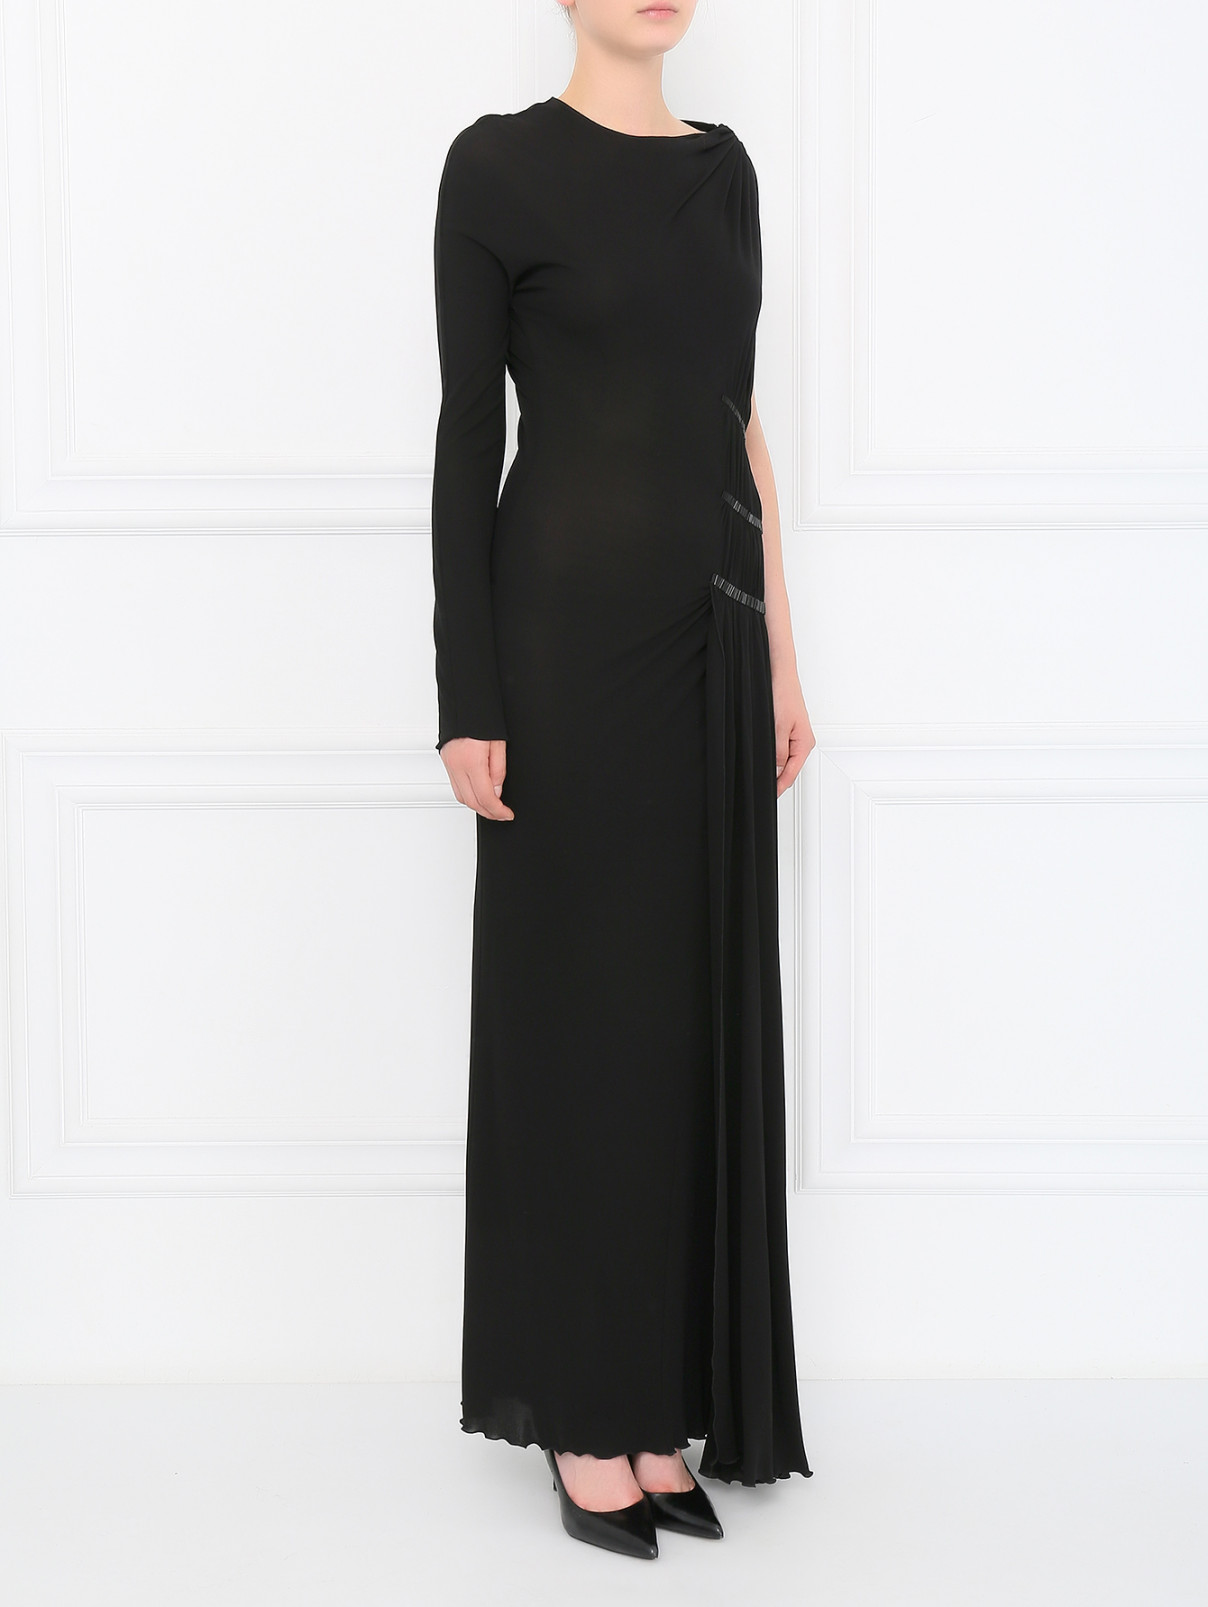 Платье-макси с драпировкой и бисером Jean Paul Gaultier  –  Модель Общий вид  – Цвет:  Черный